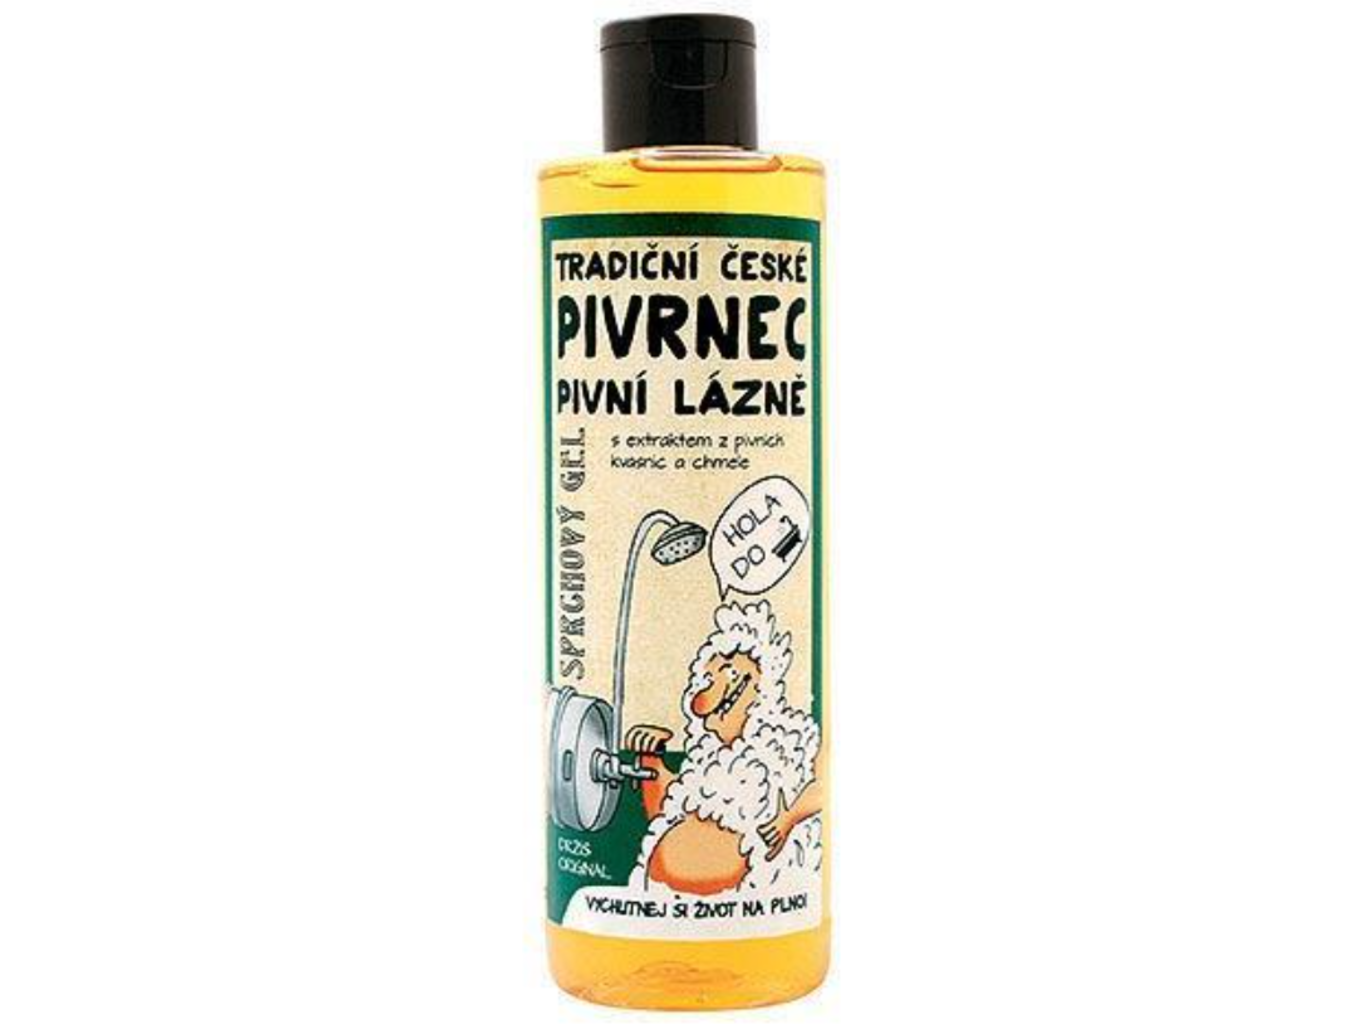 Pivní lázeň Pivrnec - sprchový gel 250ml